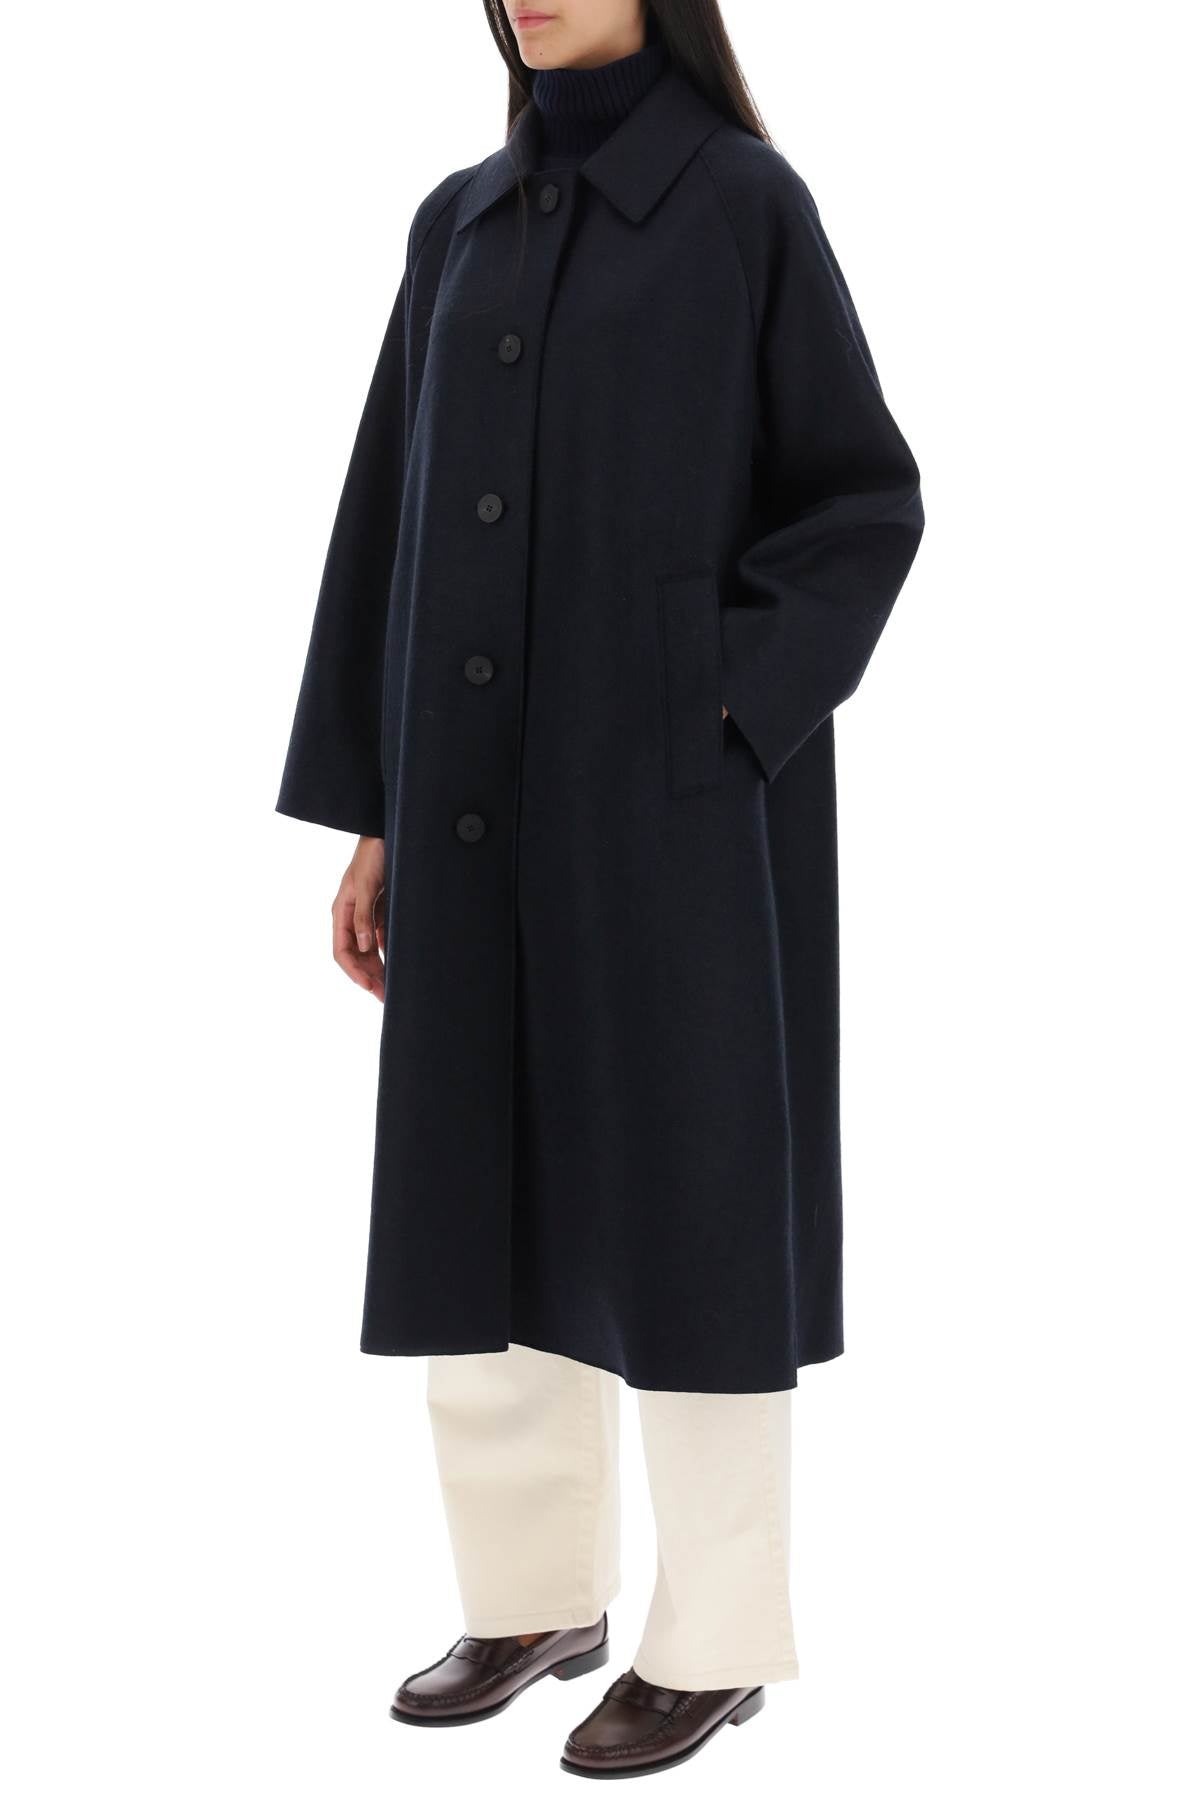 Harris wharf london balmacaan coat in pressed wool-3